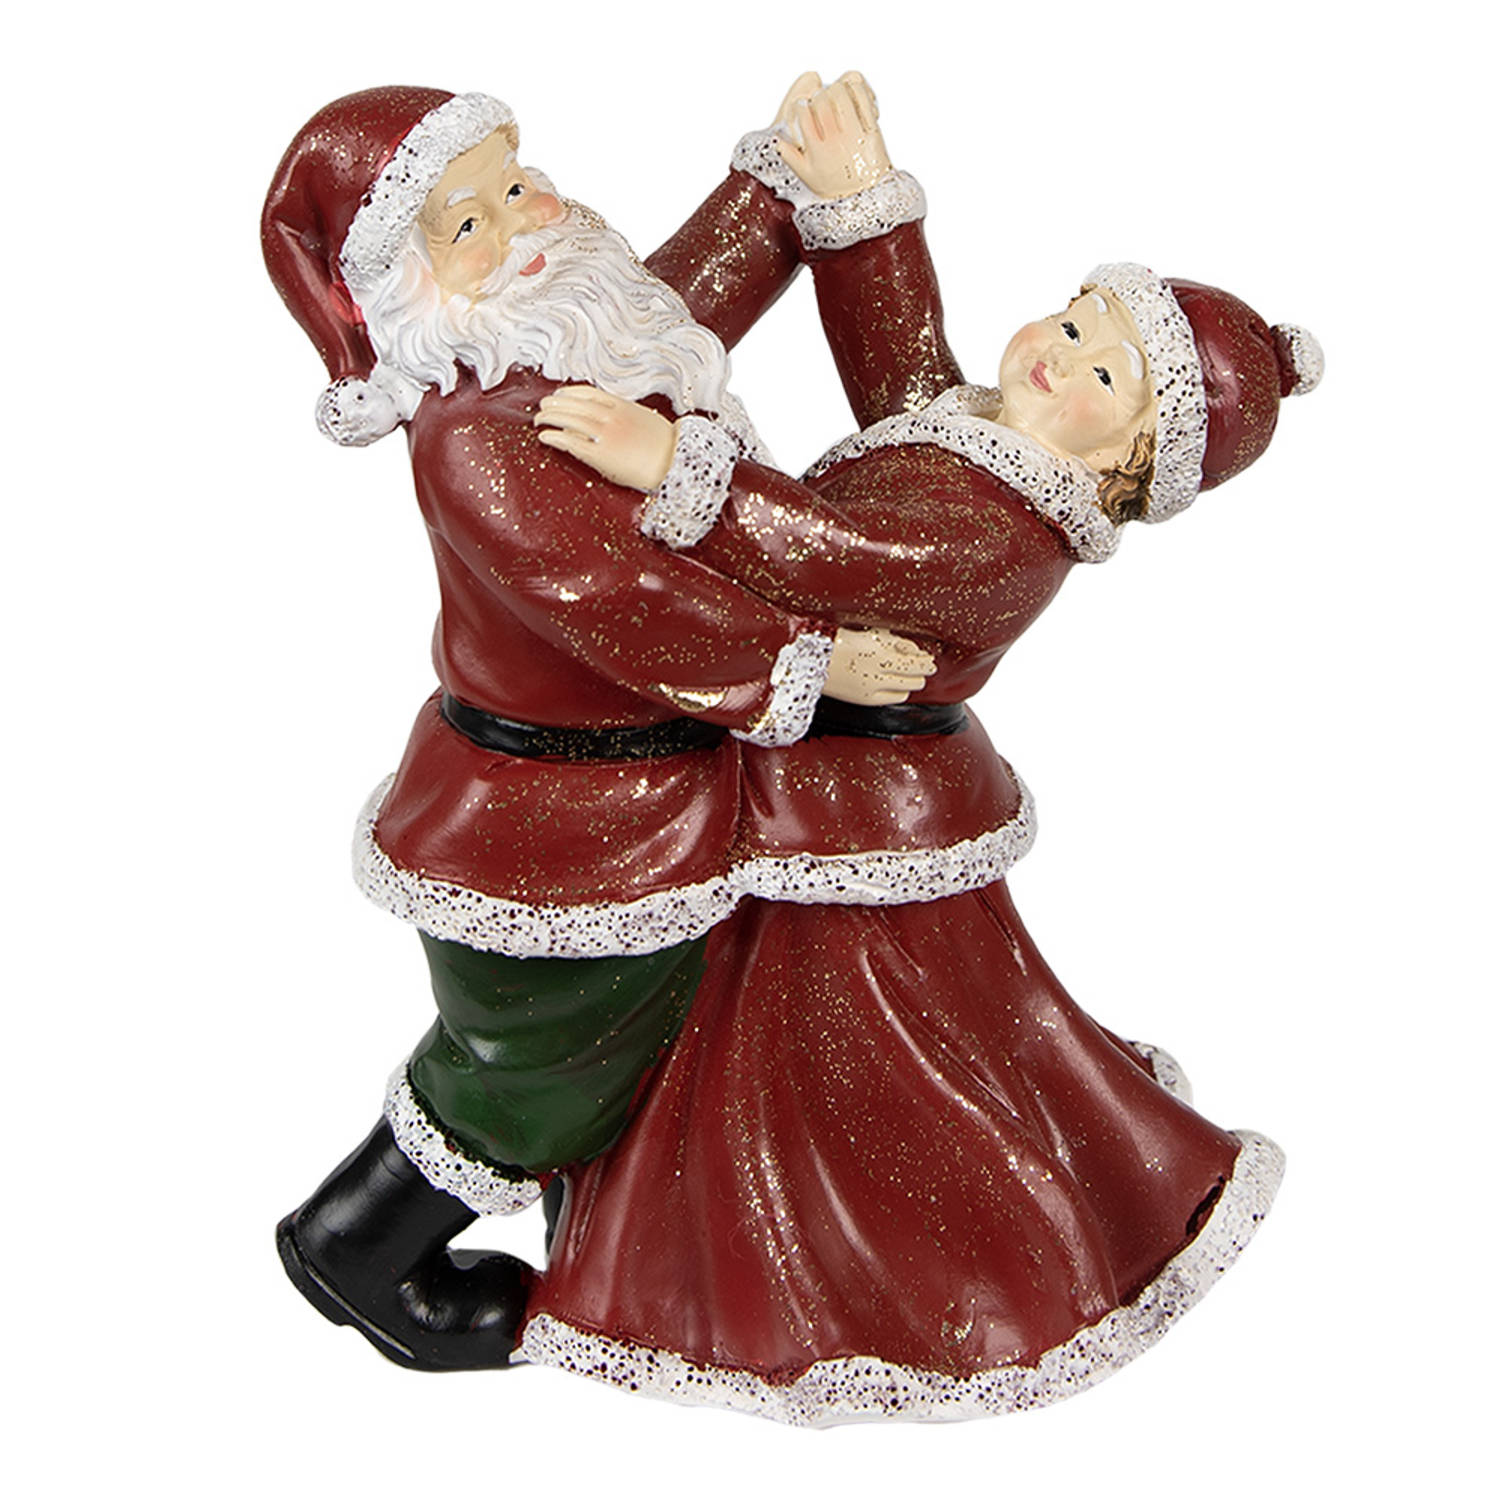 HAES DECO - Kerstman deco Figuur - Formaat 12x8x15 cm - Kleur Rood - Materiaal Polyresin - Kerst Figuur, Kerstdecoratie